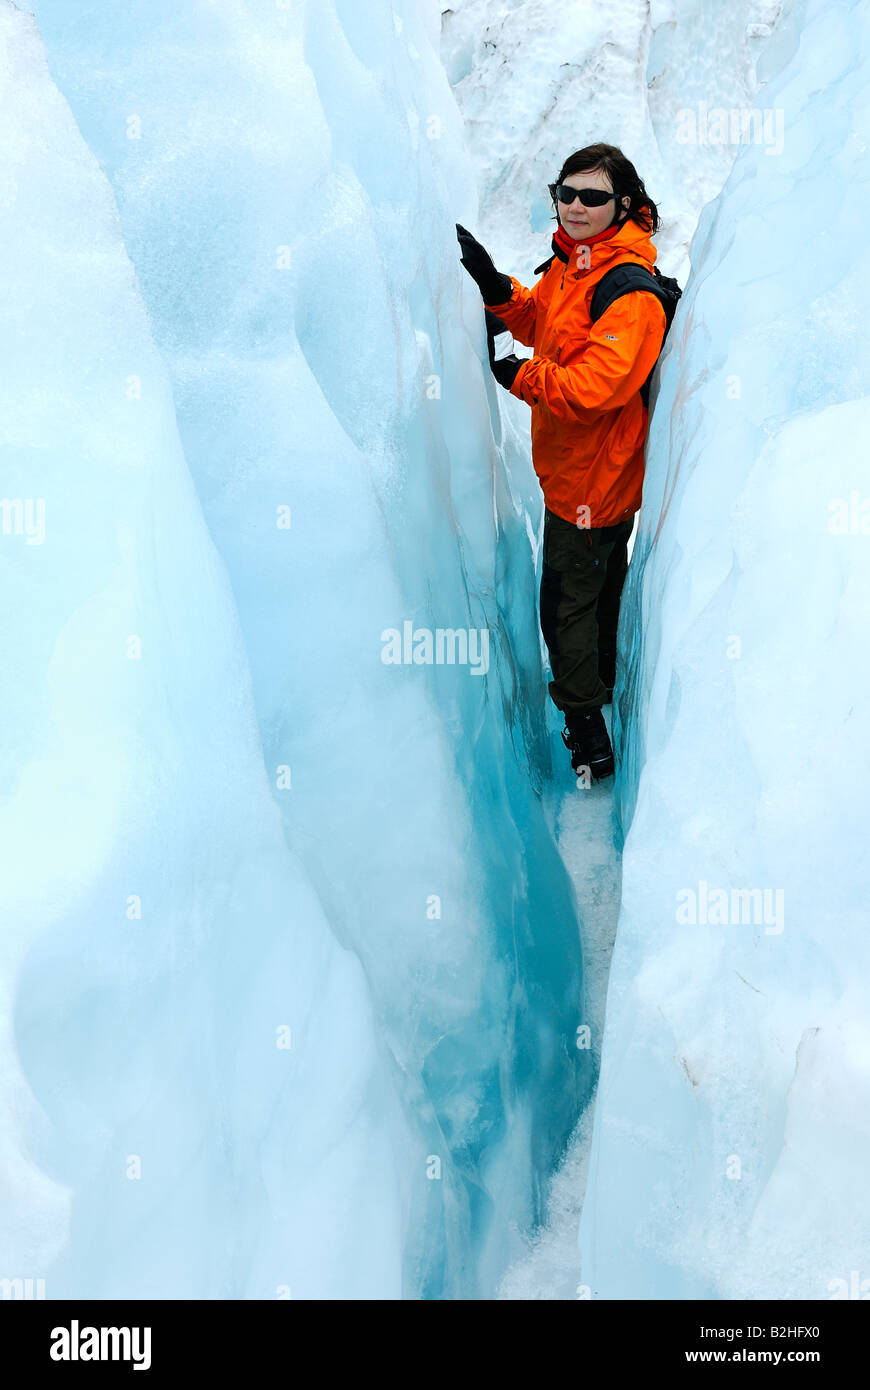 L'errance de glace glace crevasse crevasse wanderer Franz Josef Glacier NP Westland National Park au sud ouest de la Nouvelle-Zélande paysage de glace Banque D'Images